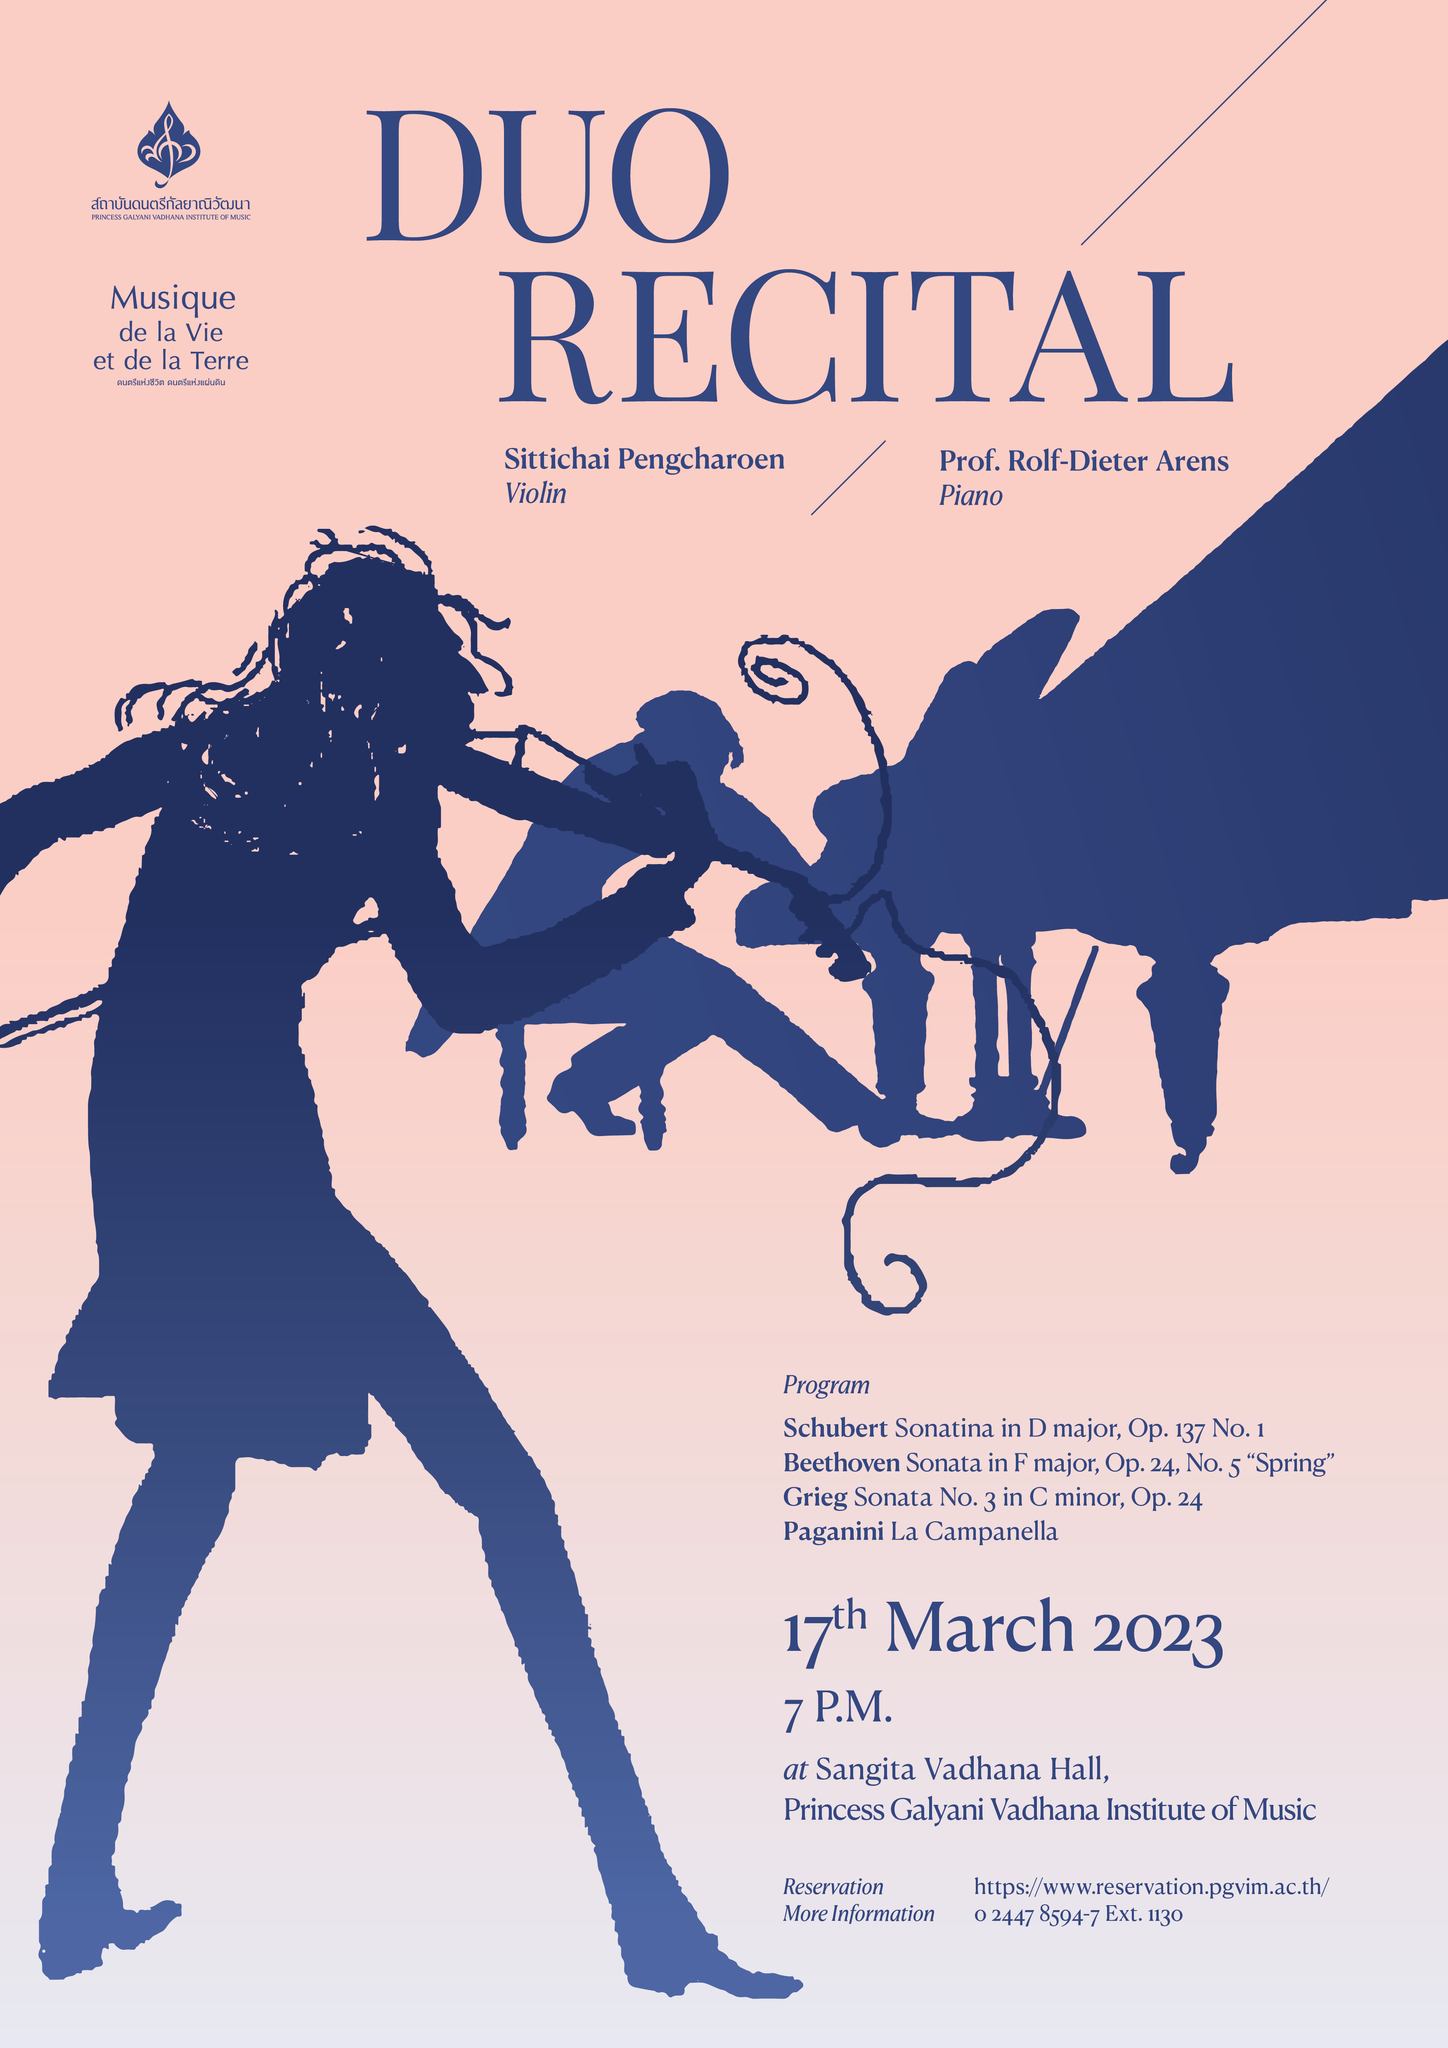 สถาบันดนตรีกัลยาณิวัฒนา ขอเชิญชมคอนเสิร์ต Duo Recital ศุกร์ที่ 17 มีนาคม นี้